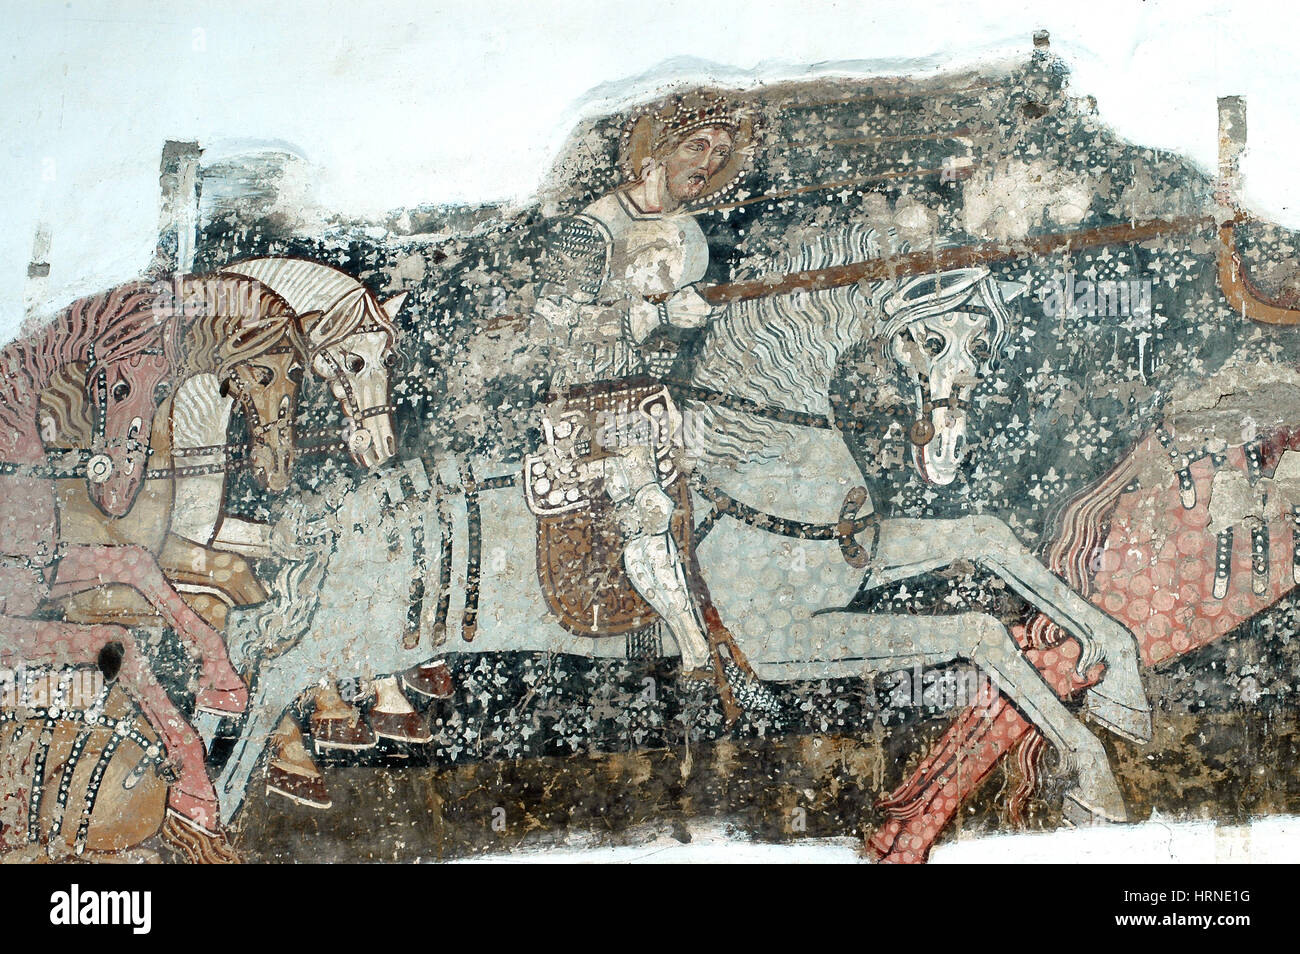 DARJIU, Roumanie - 12 MAI 2008 : Le 13ème siècle, peintures murales de l'église de Szekelyderzs, découvert lors d'une restauration, présente dans la légende du pendu Banque D'Images